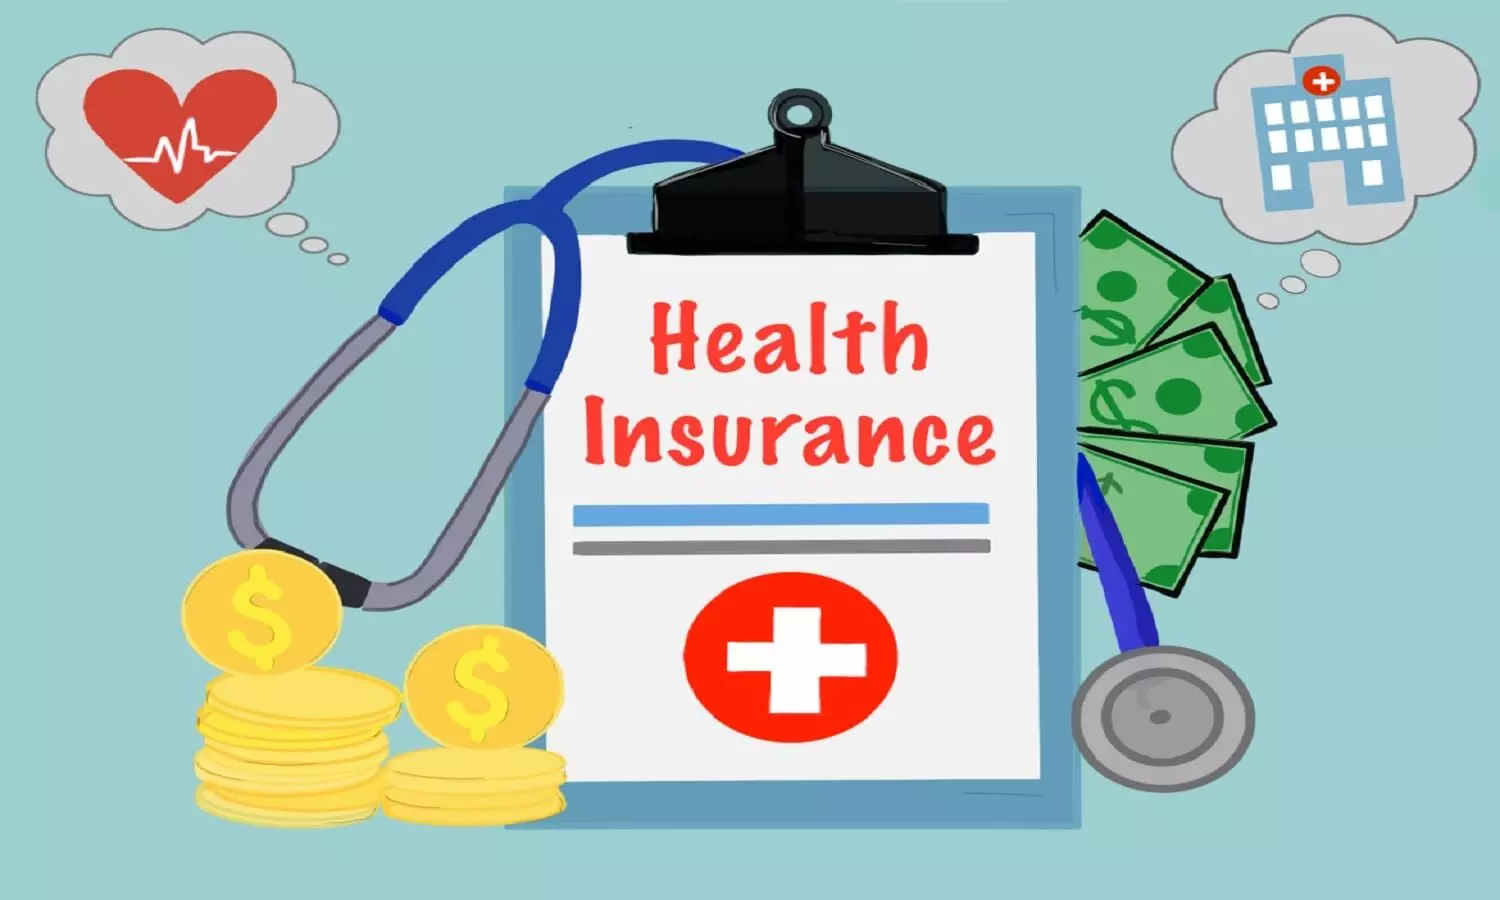 Medical inflation 2022: मेडिकल क्षेत्र की महंगाई के कारण स्वास्थ्य बीमा हुआ महंगा